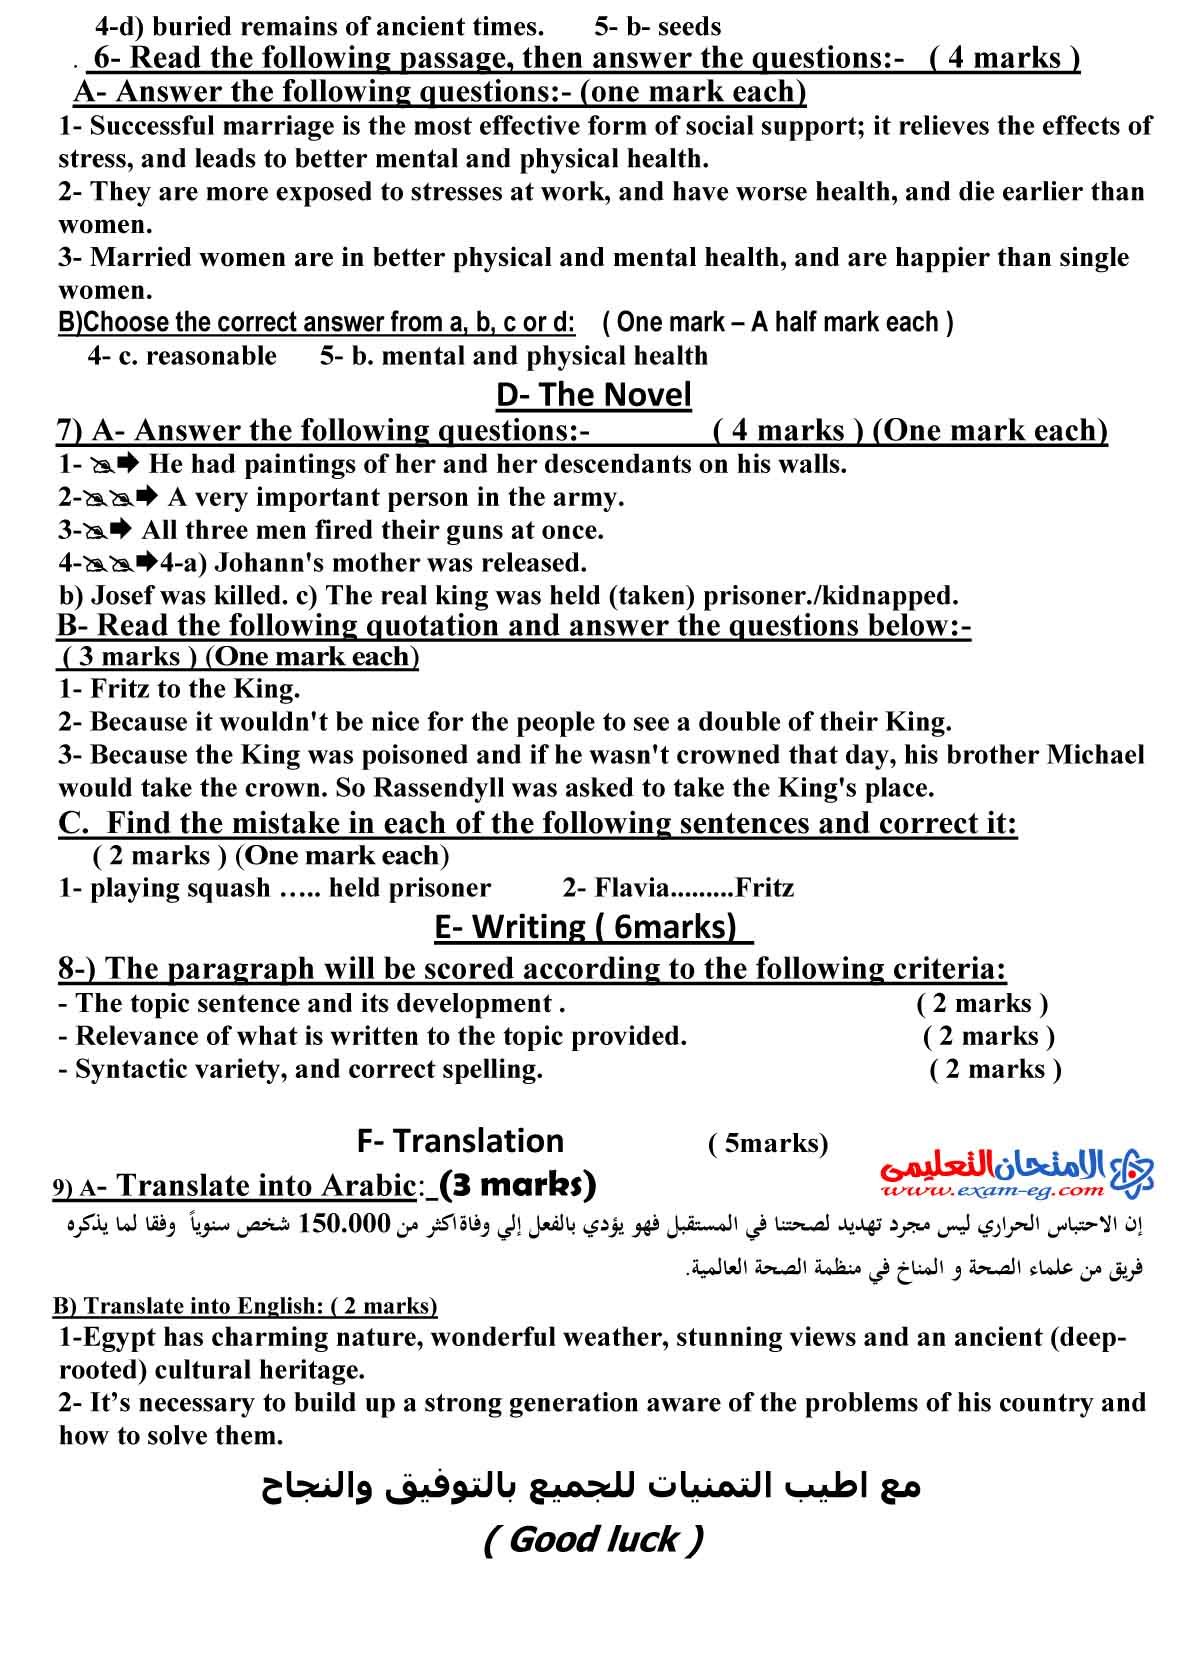 اجابة لغة انجليزية 1 - الامتحان التعليمى-2